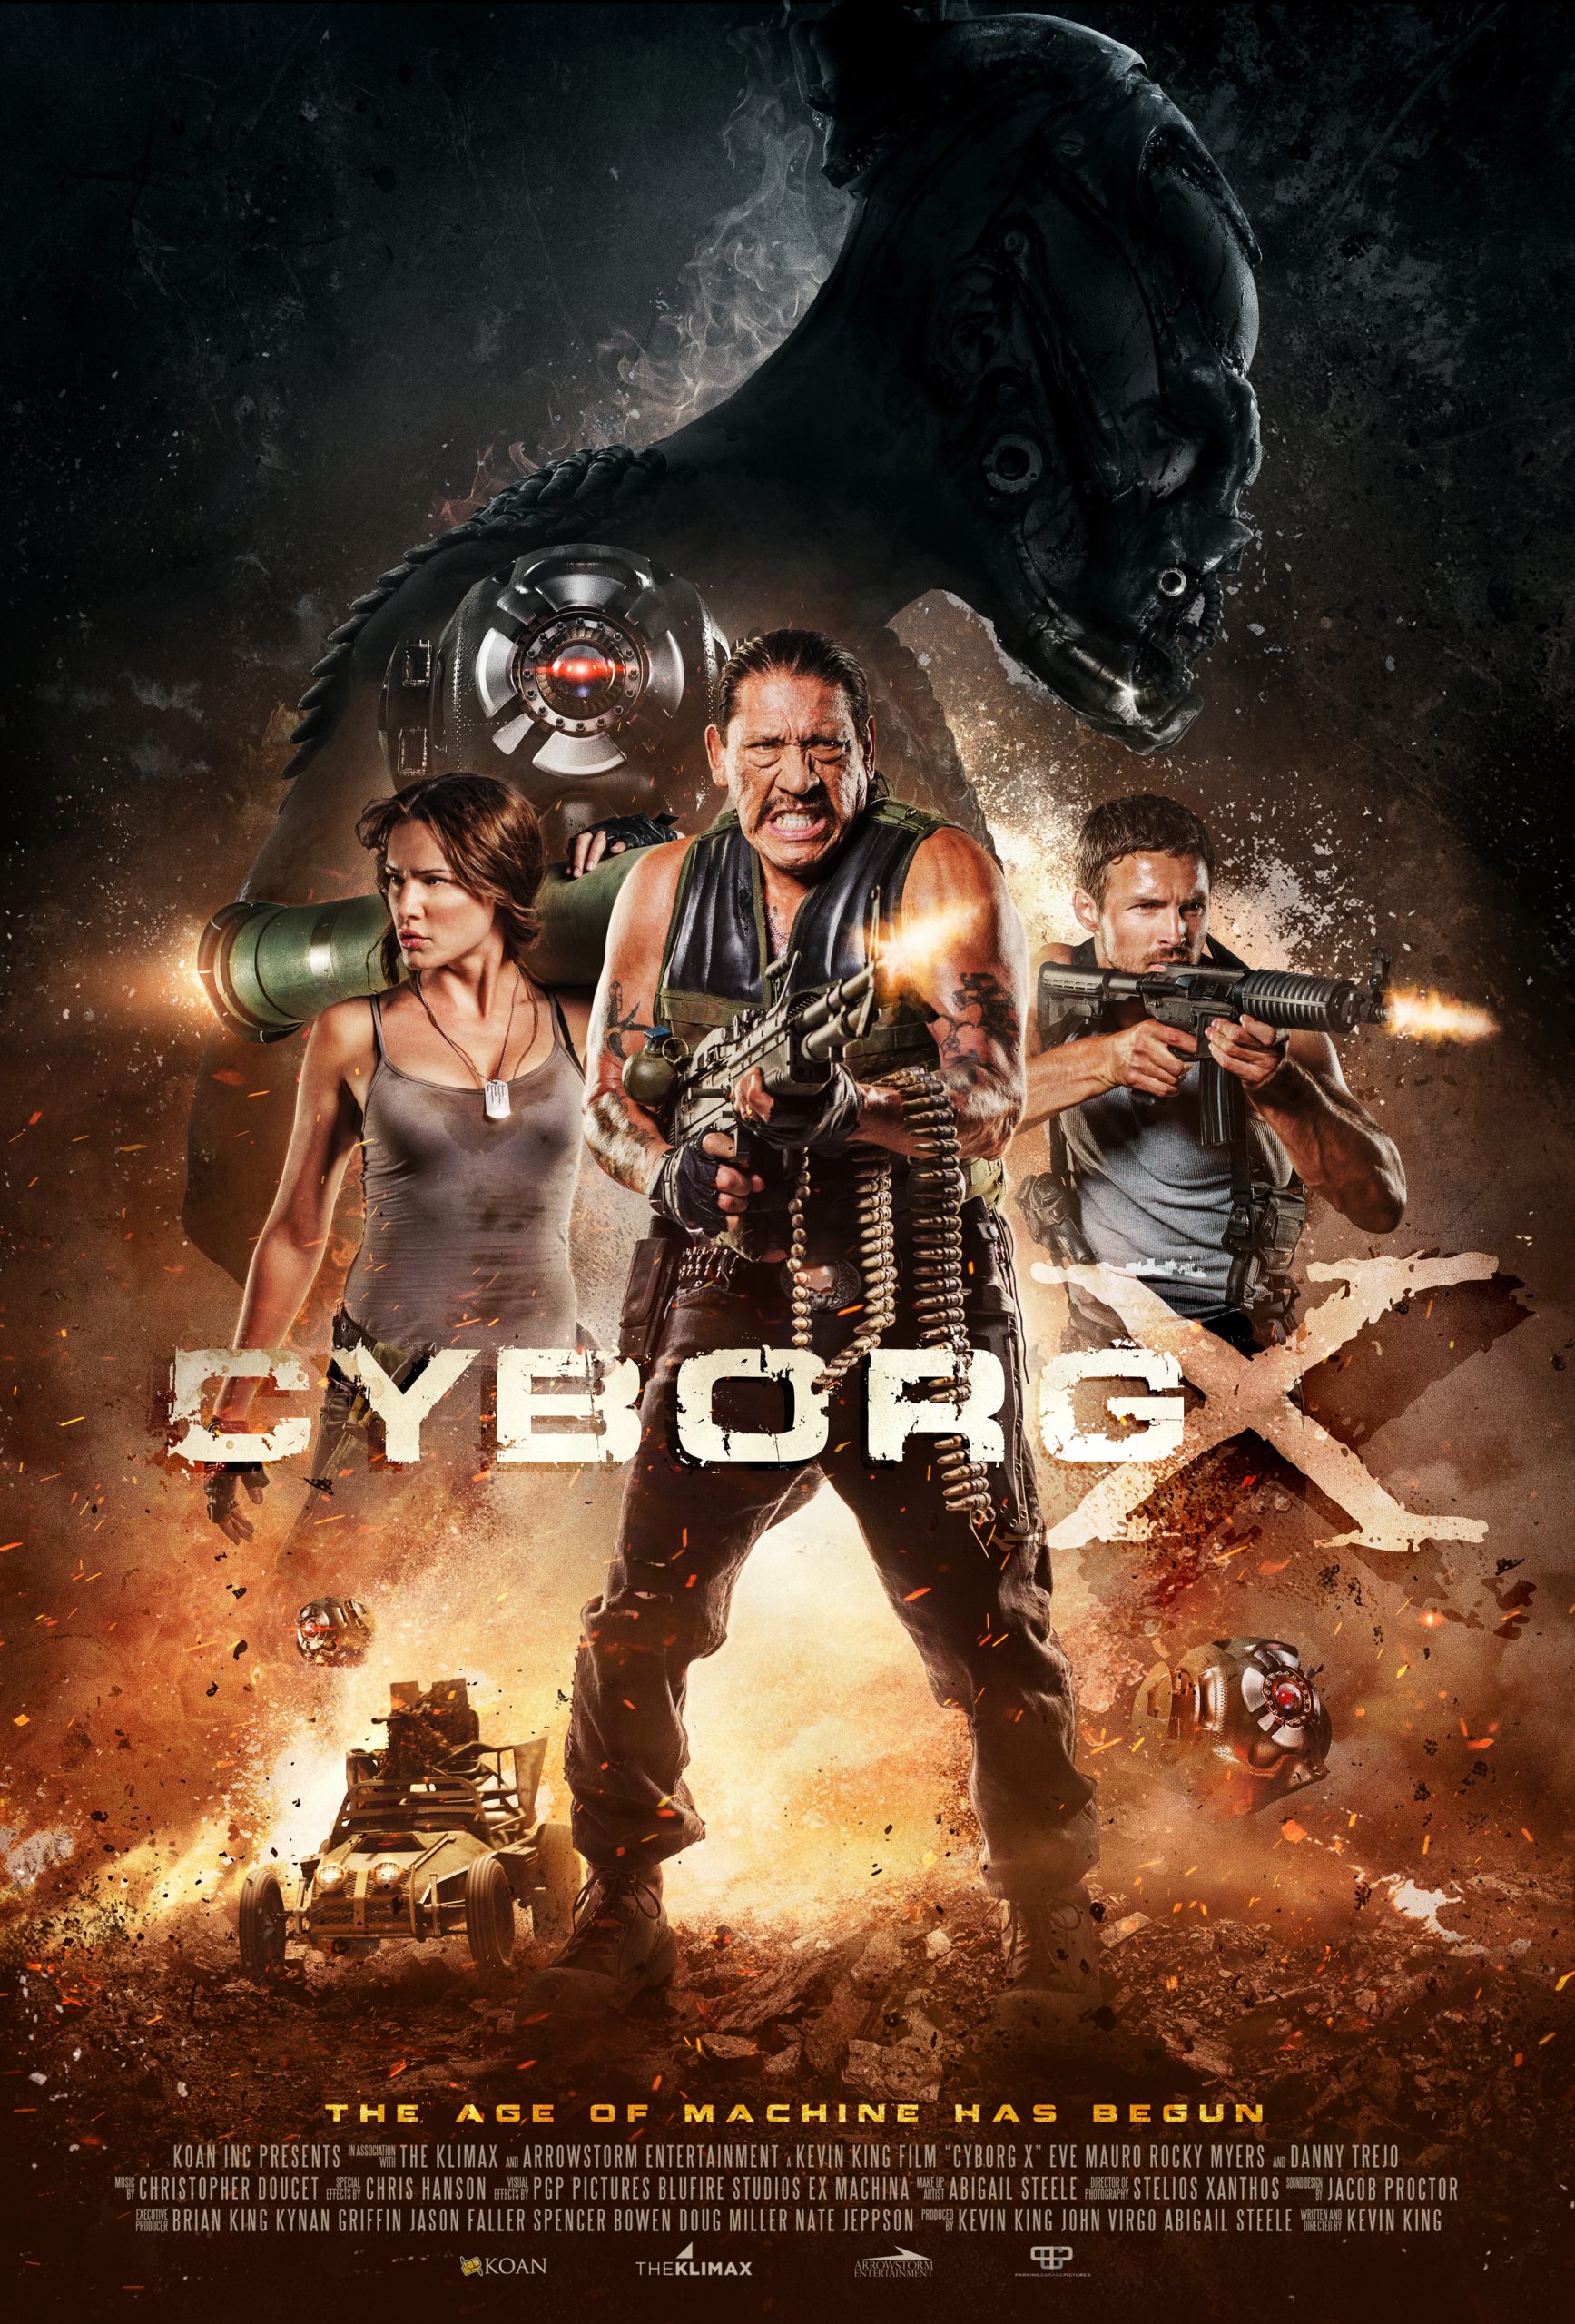 Cyborg x (2016) ไซบอร์ก x สงครามถล่มทัพจักรกล Eve Mauro